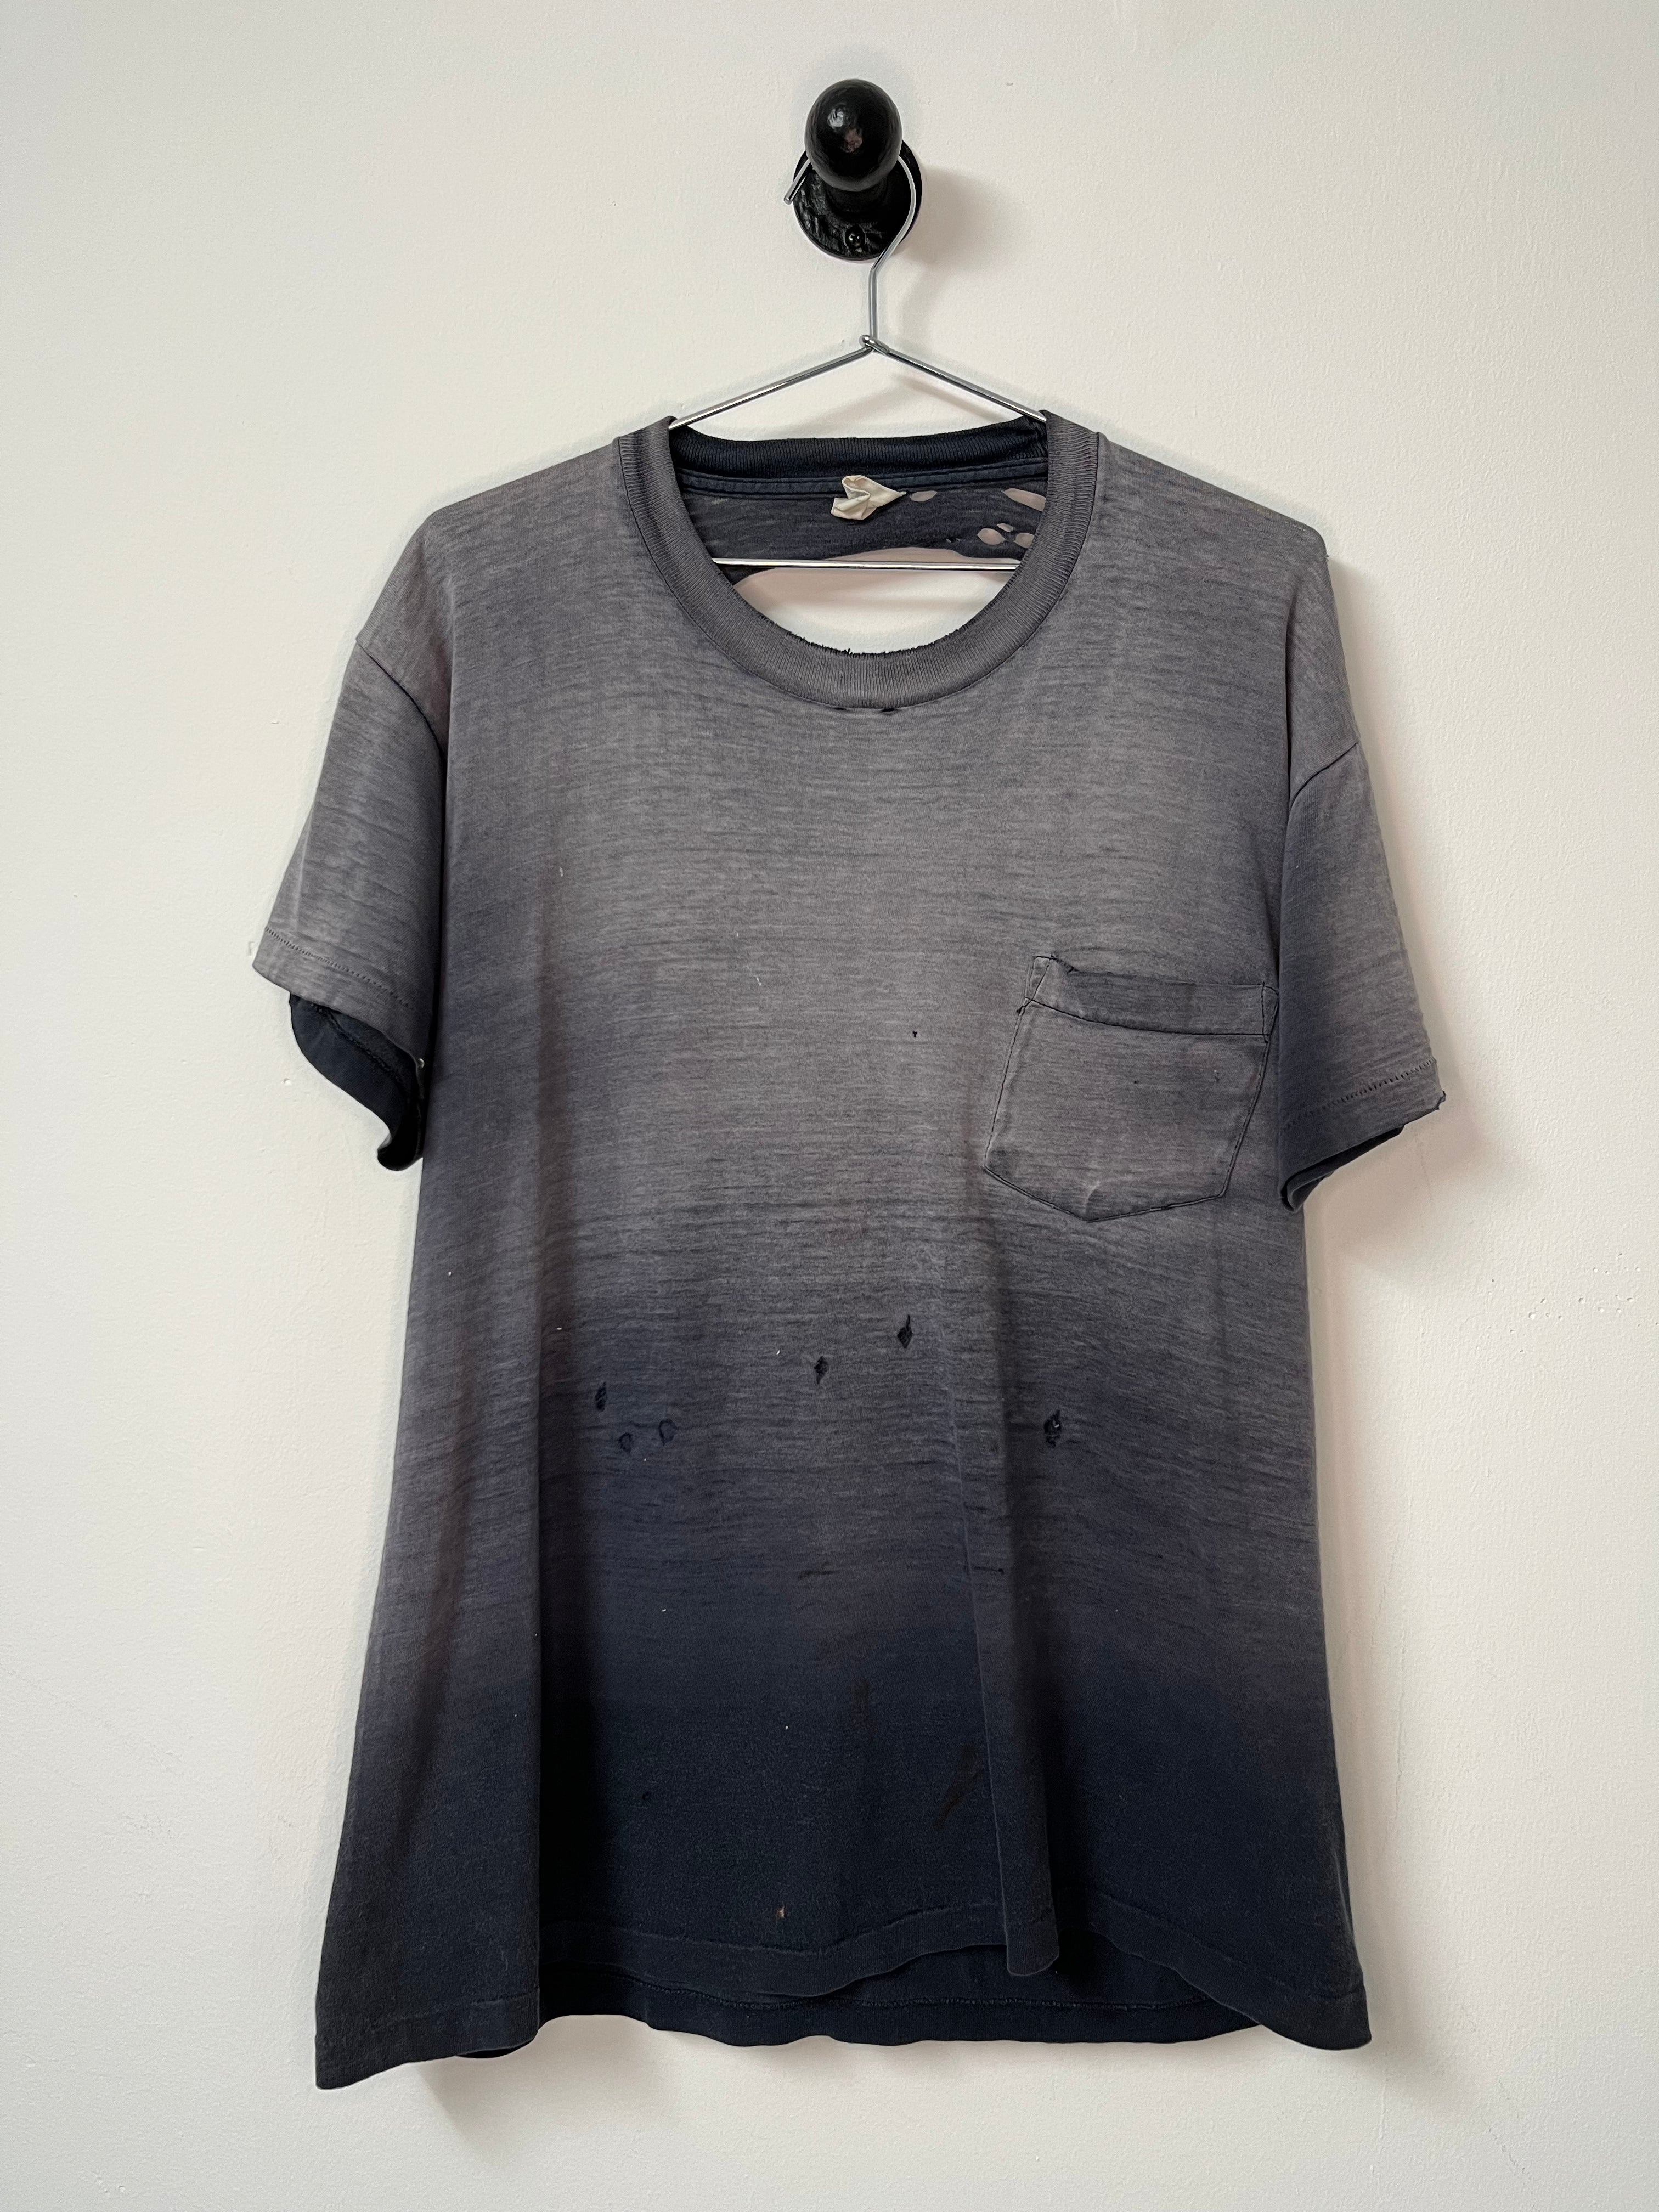 1980s Thrashed, Sun-Faded Pocket T-Shirt - Faded Black - L/XL